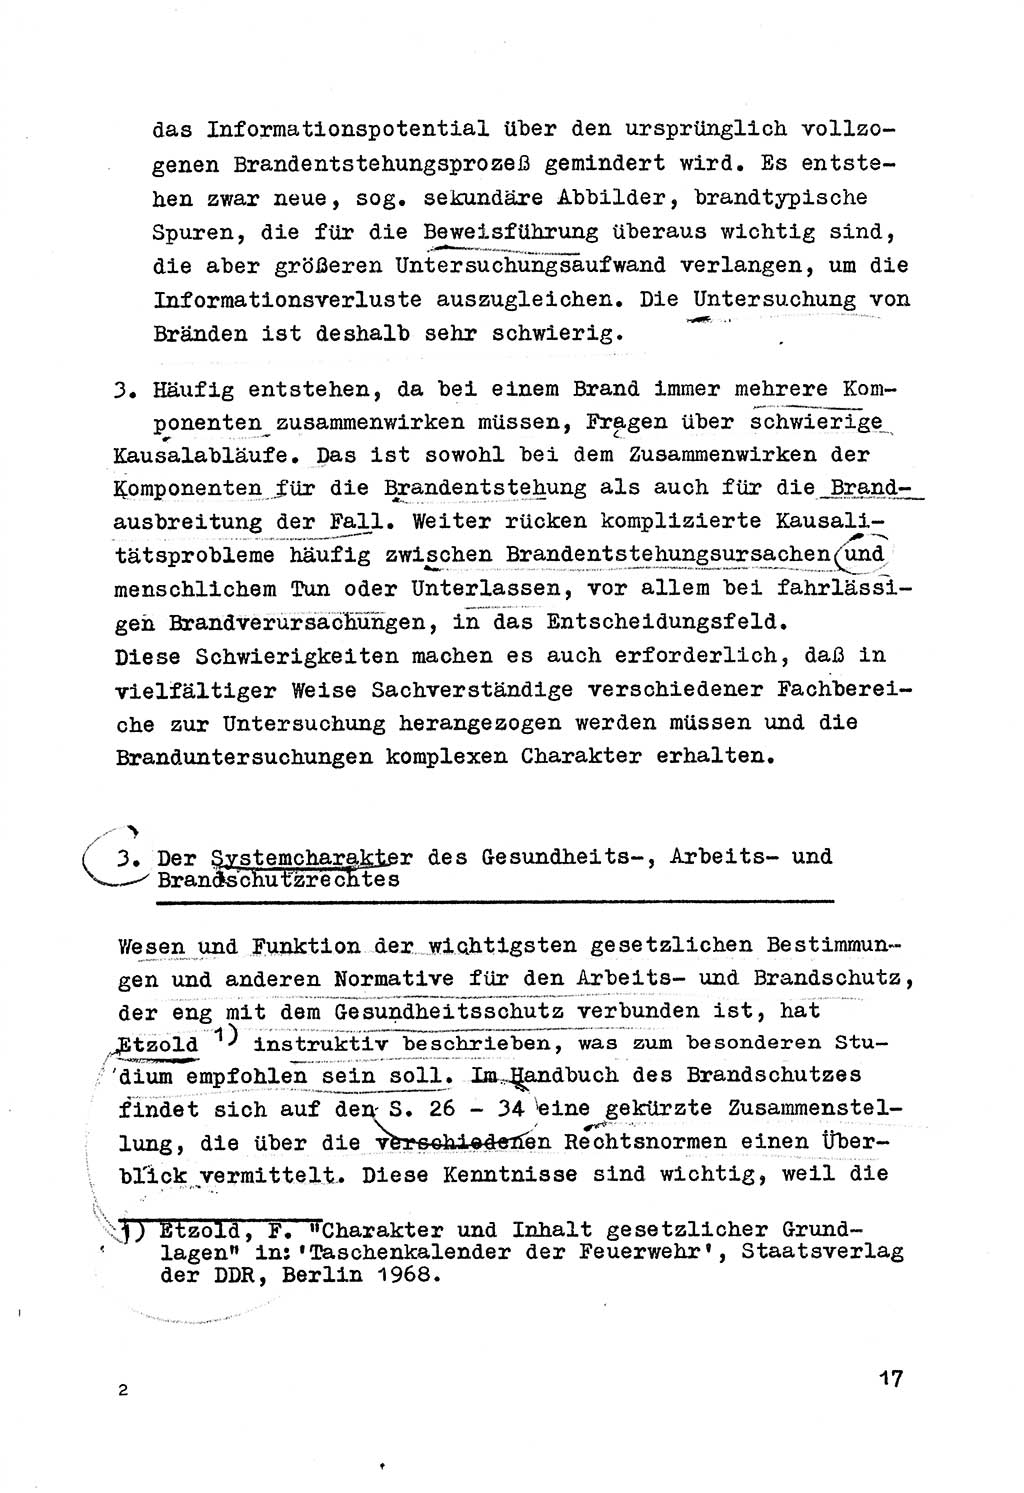 Strafrecht der DDR (Deutsche Demokratische Republik), Besonderer Teil, Lehrmaterial, Heft 7 1970, Seite 17 (Strafr. DDR BT Lehrmat. H. 7 1970, S. 17)